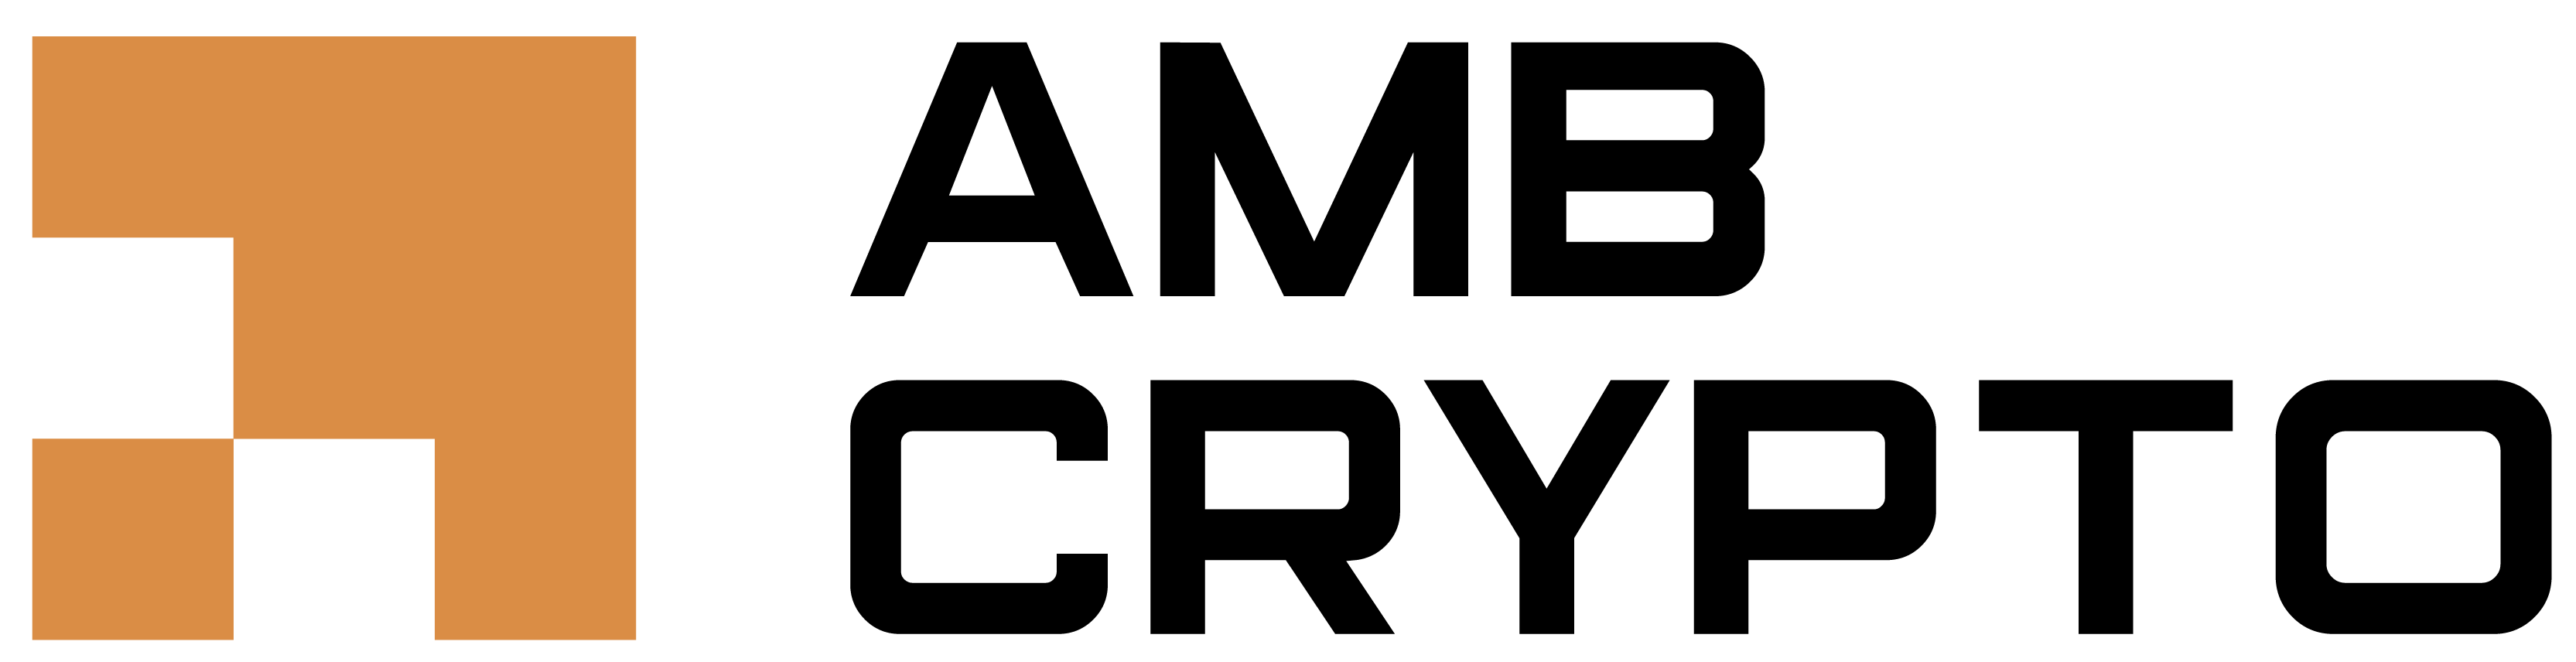 AMBCrypto Main Logo (1).png